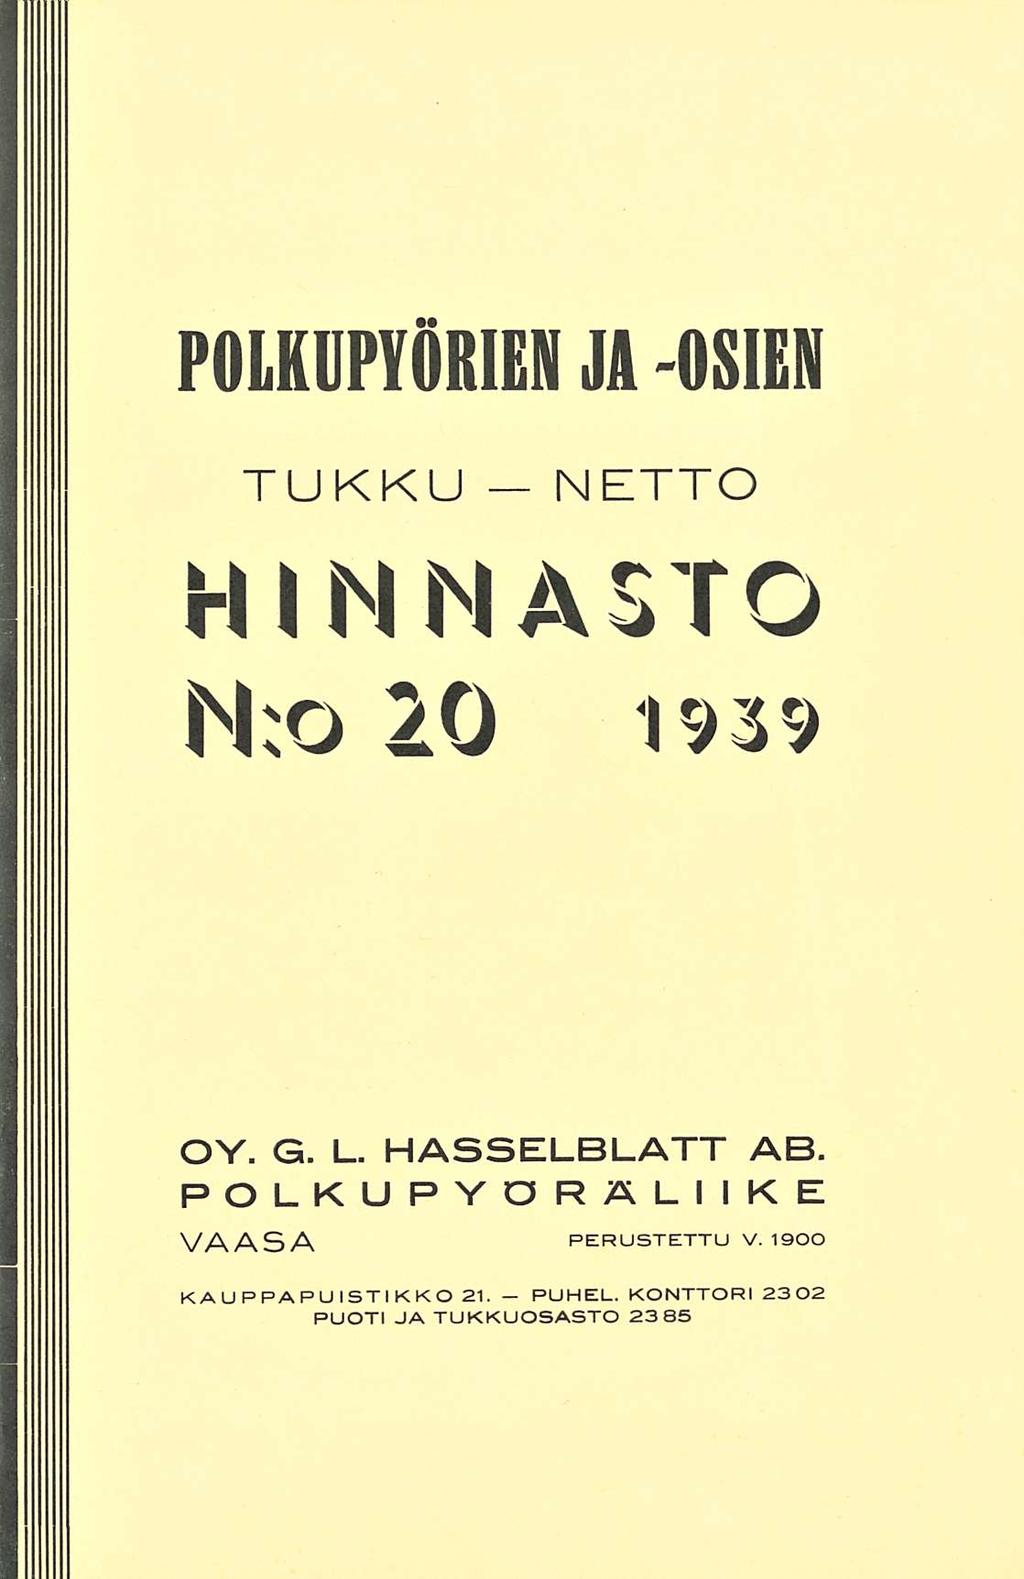 POLKUPYÖRIEN JA -OSIEN TUKKU-NETTO HINNASTO N;O 20 1939 OV. G.L. HASSELBLATT AB.